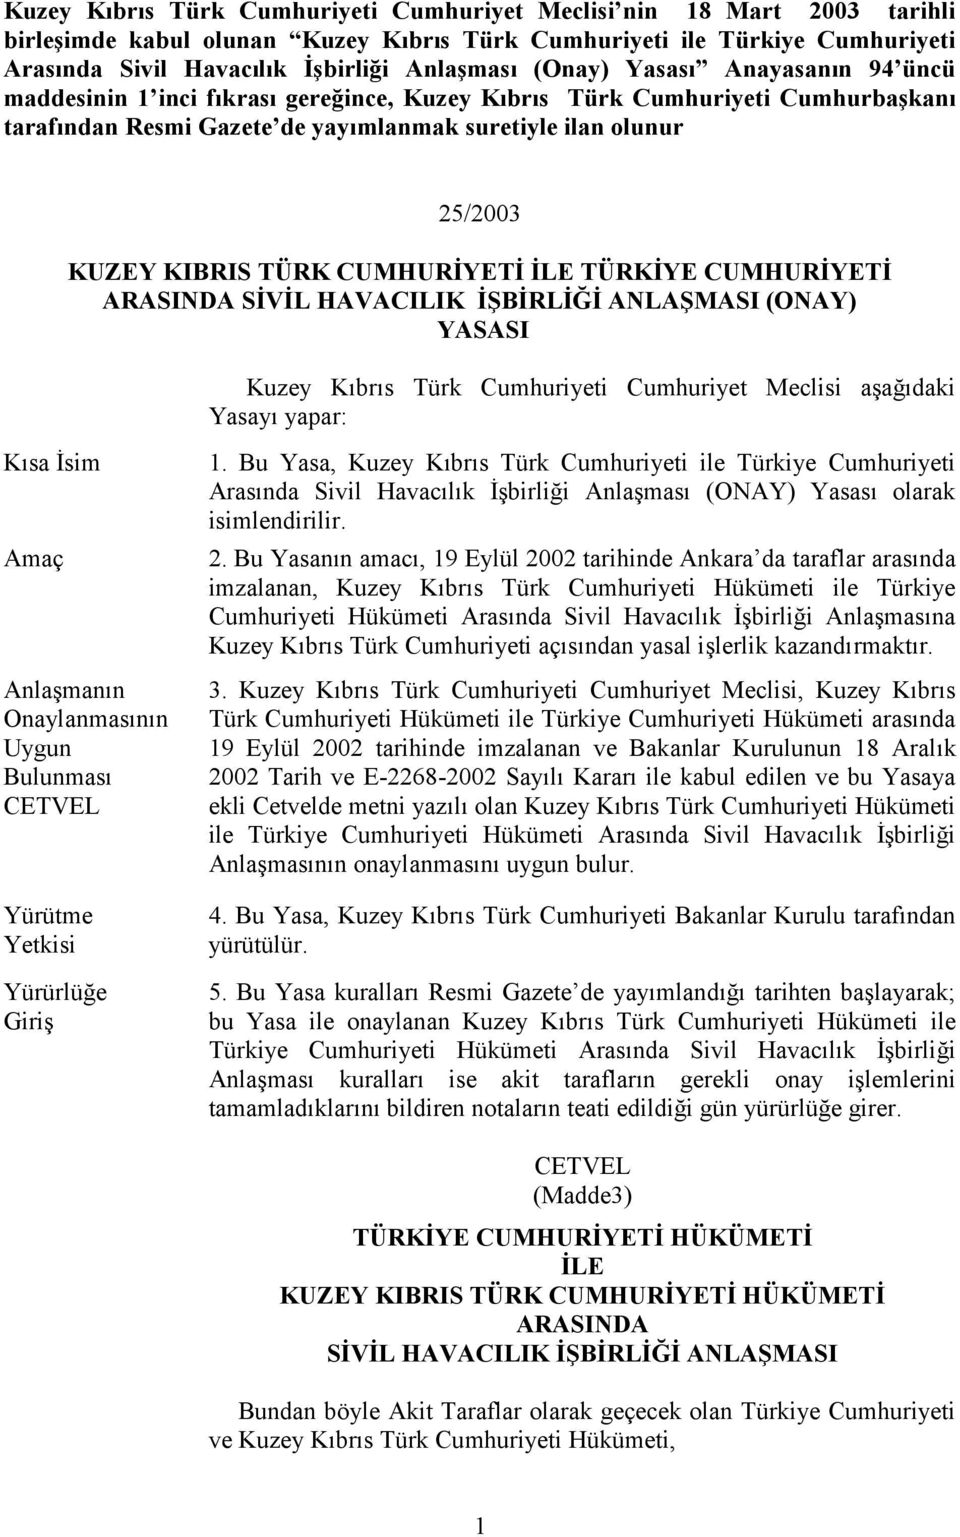 TÜRK CUMHURİYETİ İLE TÜRKİYE CUMHURİYETİ ARASINDA SİVİL HAVACILIK İŞBİRLİĞİ ANLAŞMASI (ONAY) YASASI Kuzey Kıbrıs Türk Cumhuriyeti Cumhuriyet Meclisi aşağıdaki Yasayı yapar: Kısa İsim Amaç Anlaşmanın